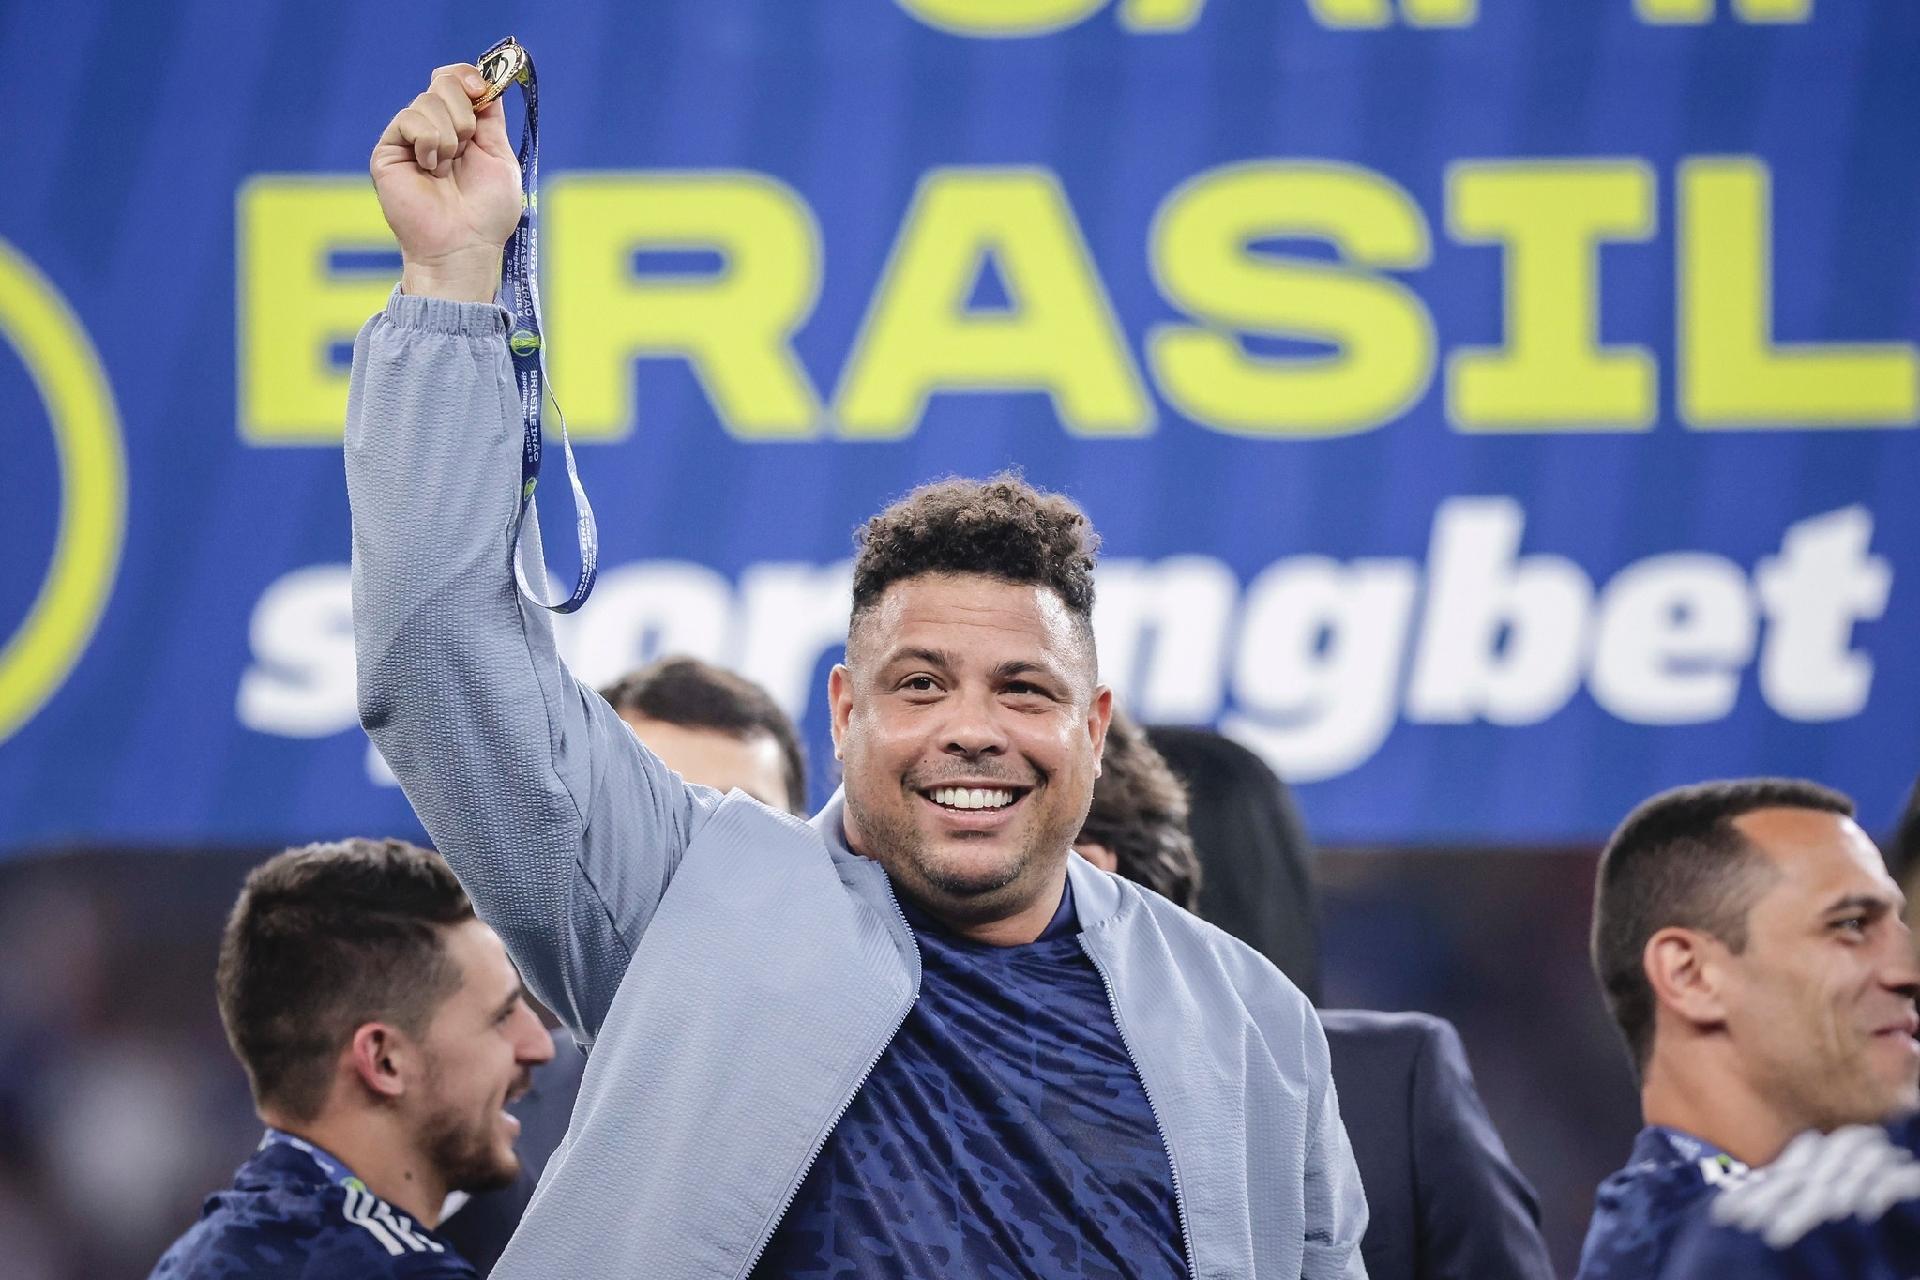 De promessa mundial a gestor do Cruzeiro: Ronaldo completa 30 anos